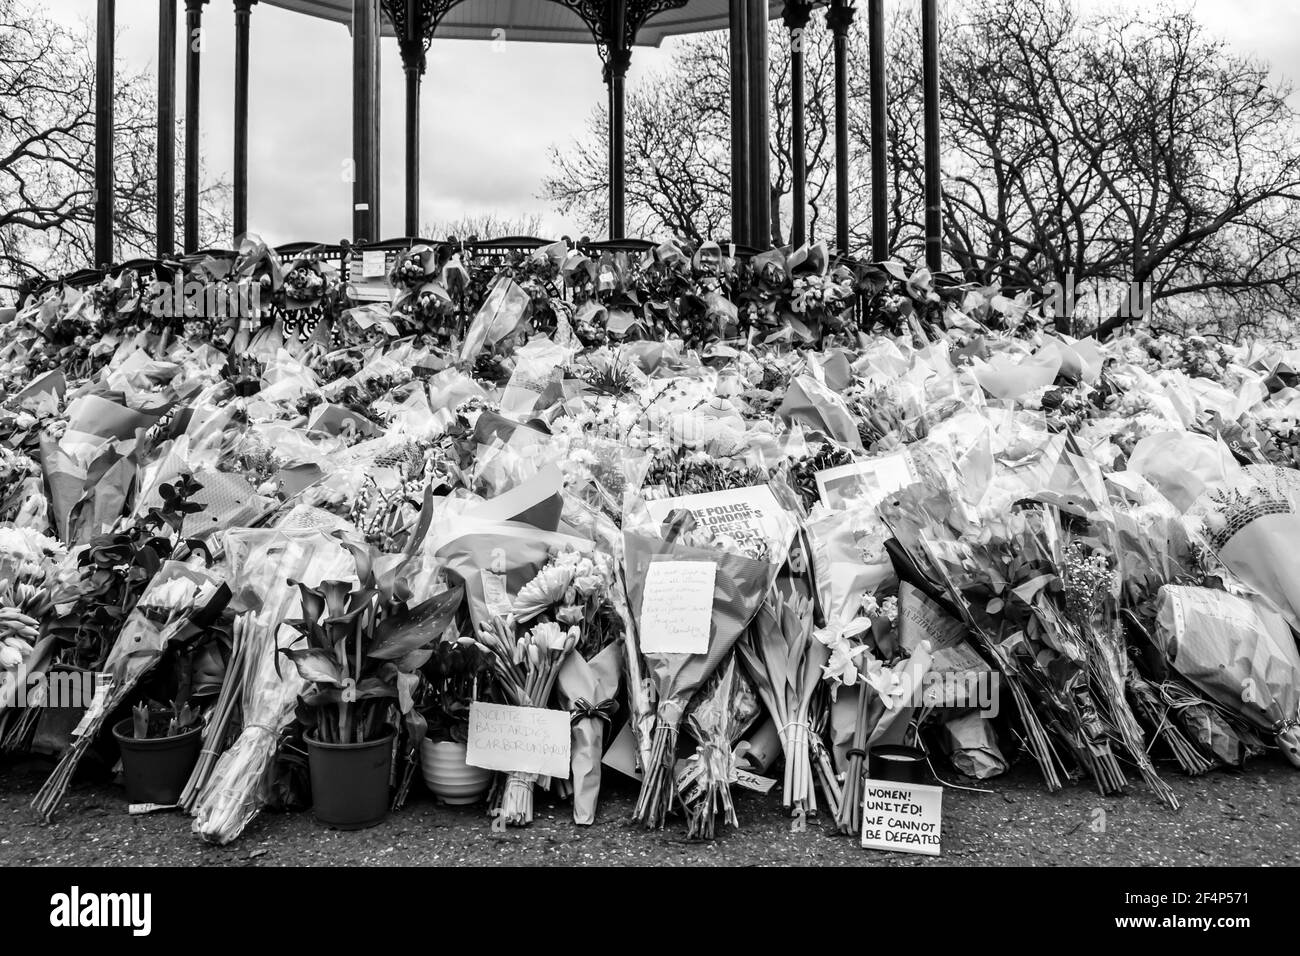 CLAPHAM, LONDON, ENGLAND- 16. März 2021: Blumen und Ehrungen in Clapham Common Bandstand, in Erinnerung an Sarah Everard, die von einer Polizei ermordet wurde Stockfoto